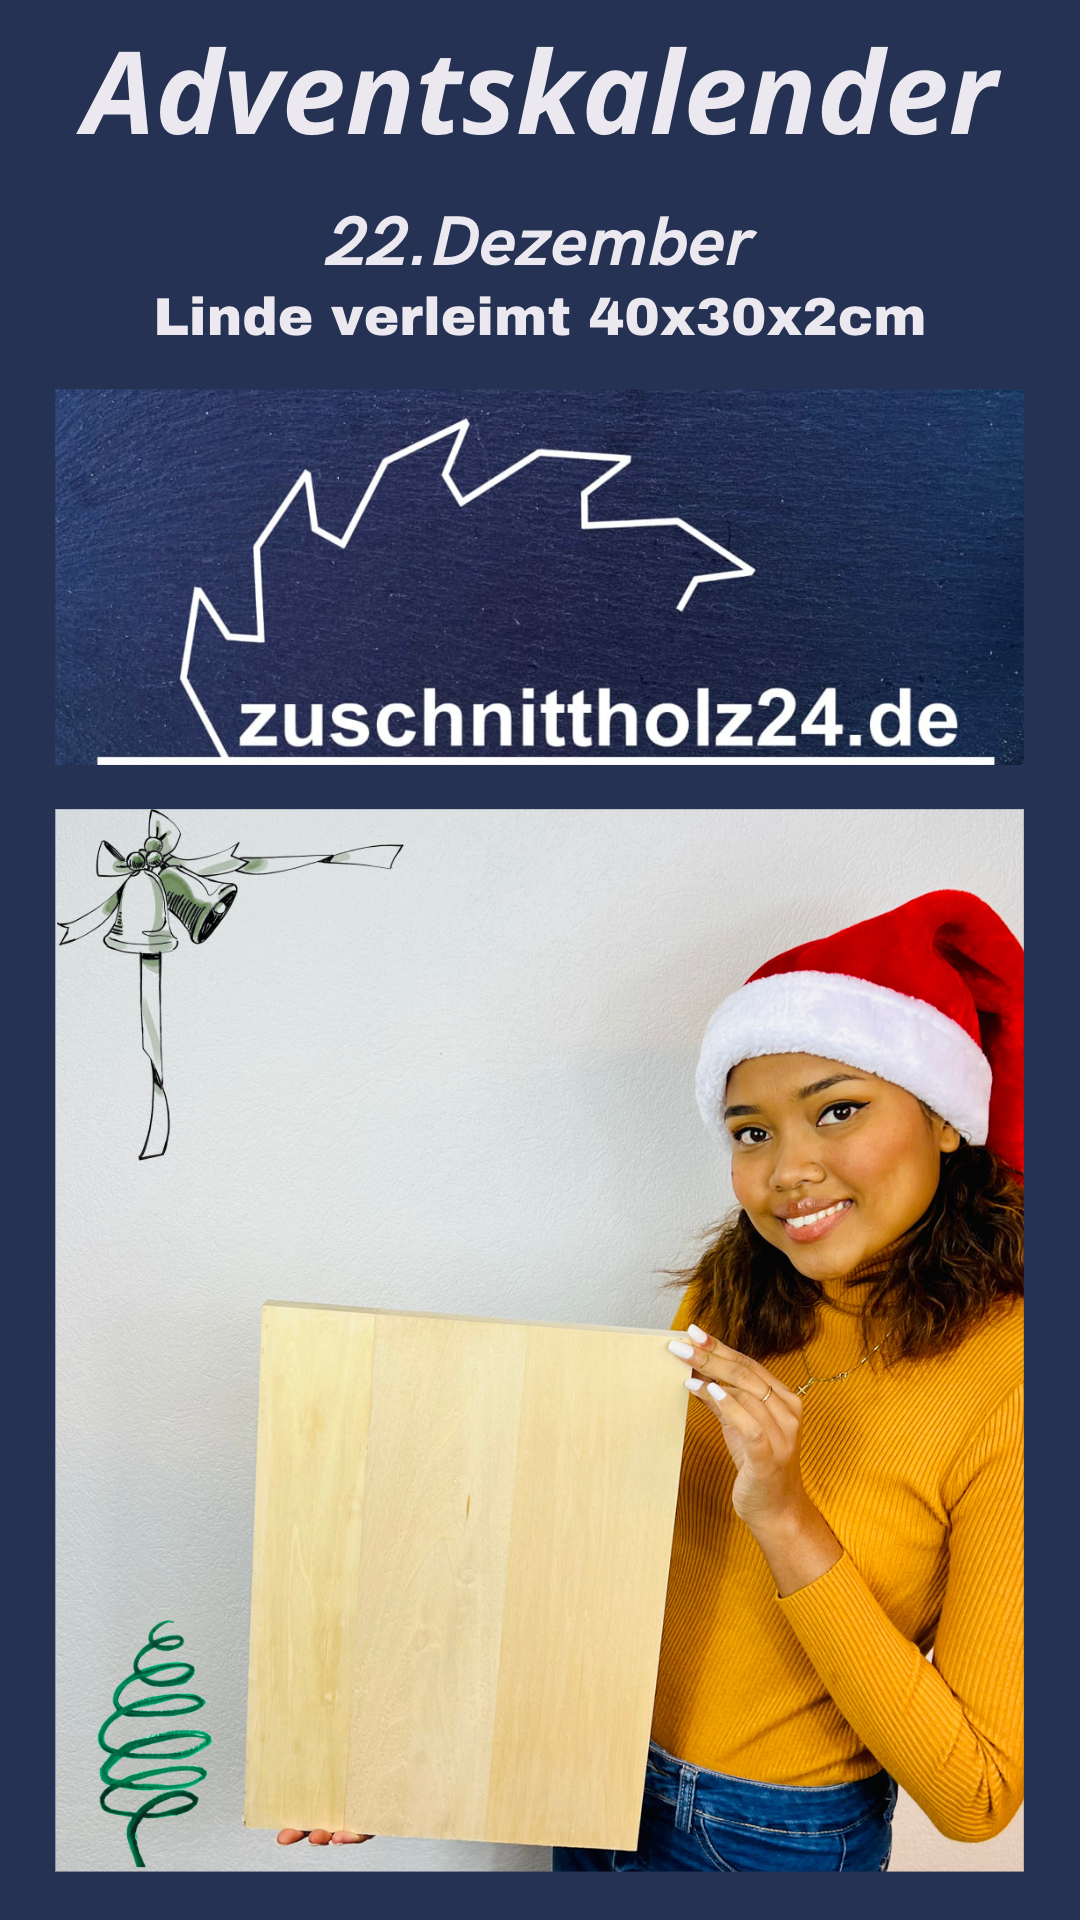 22.Adventskalender_Zuschnittholz24